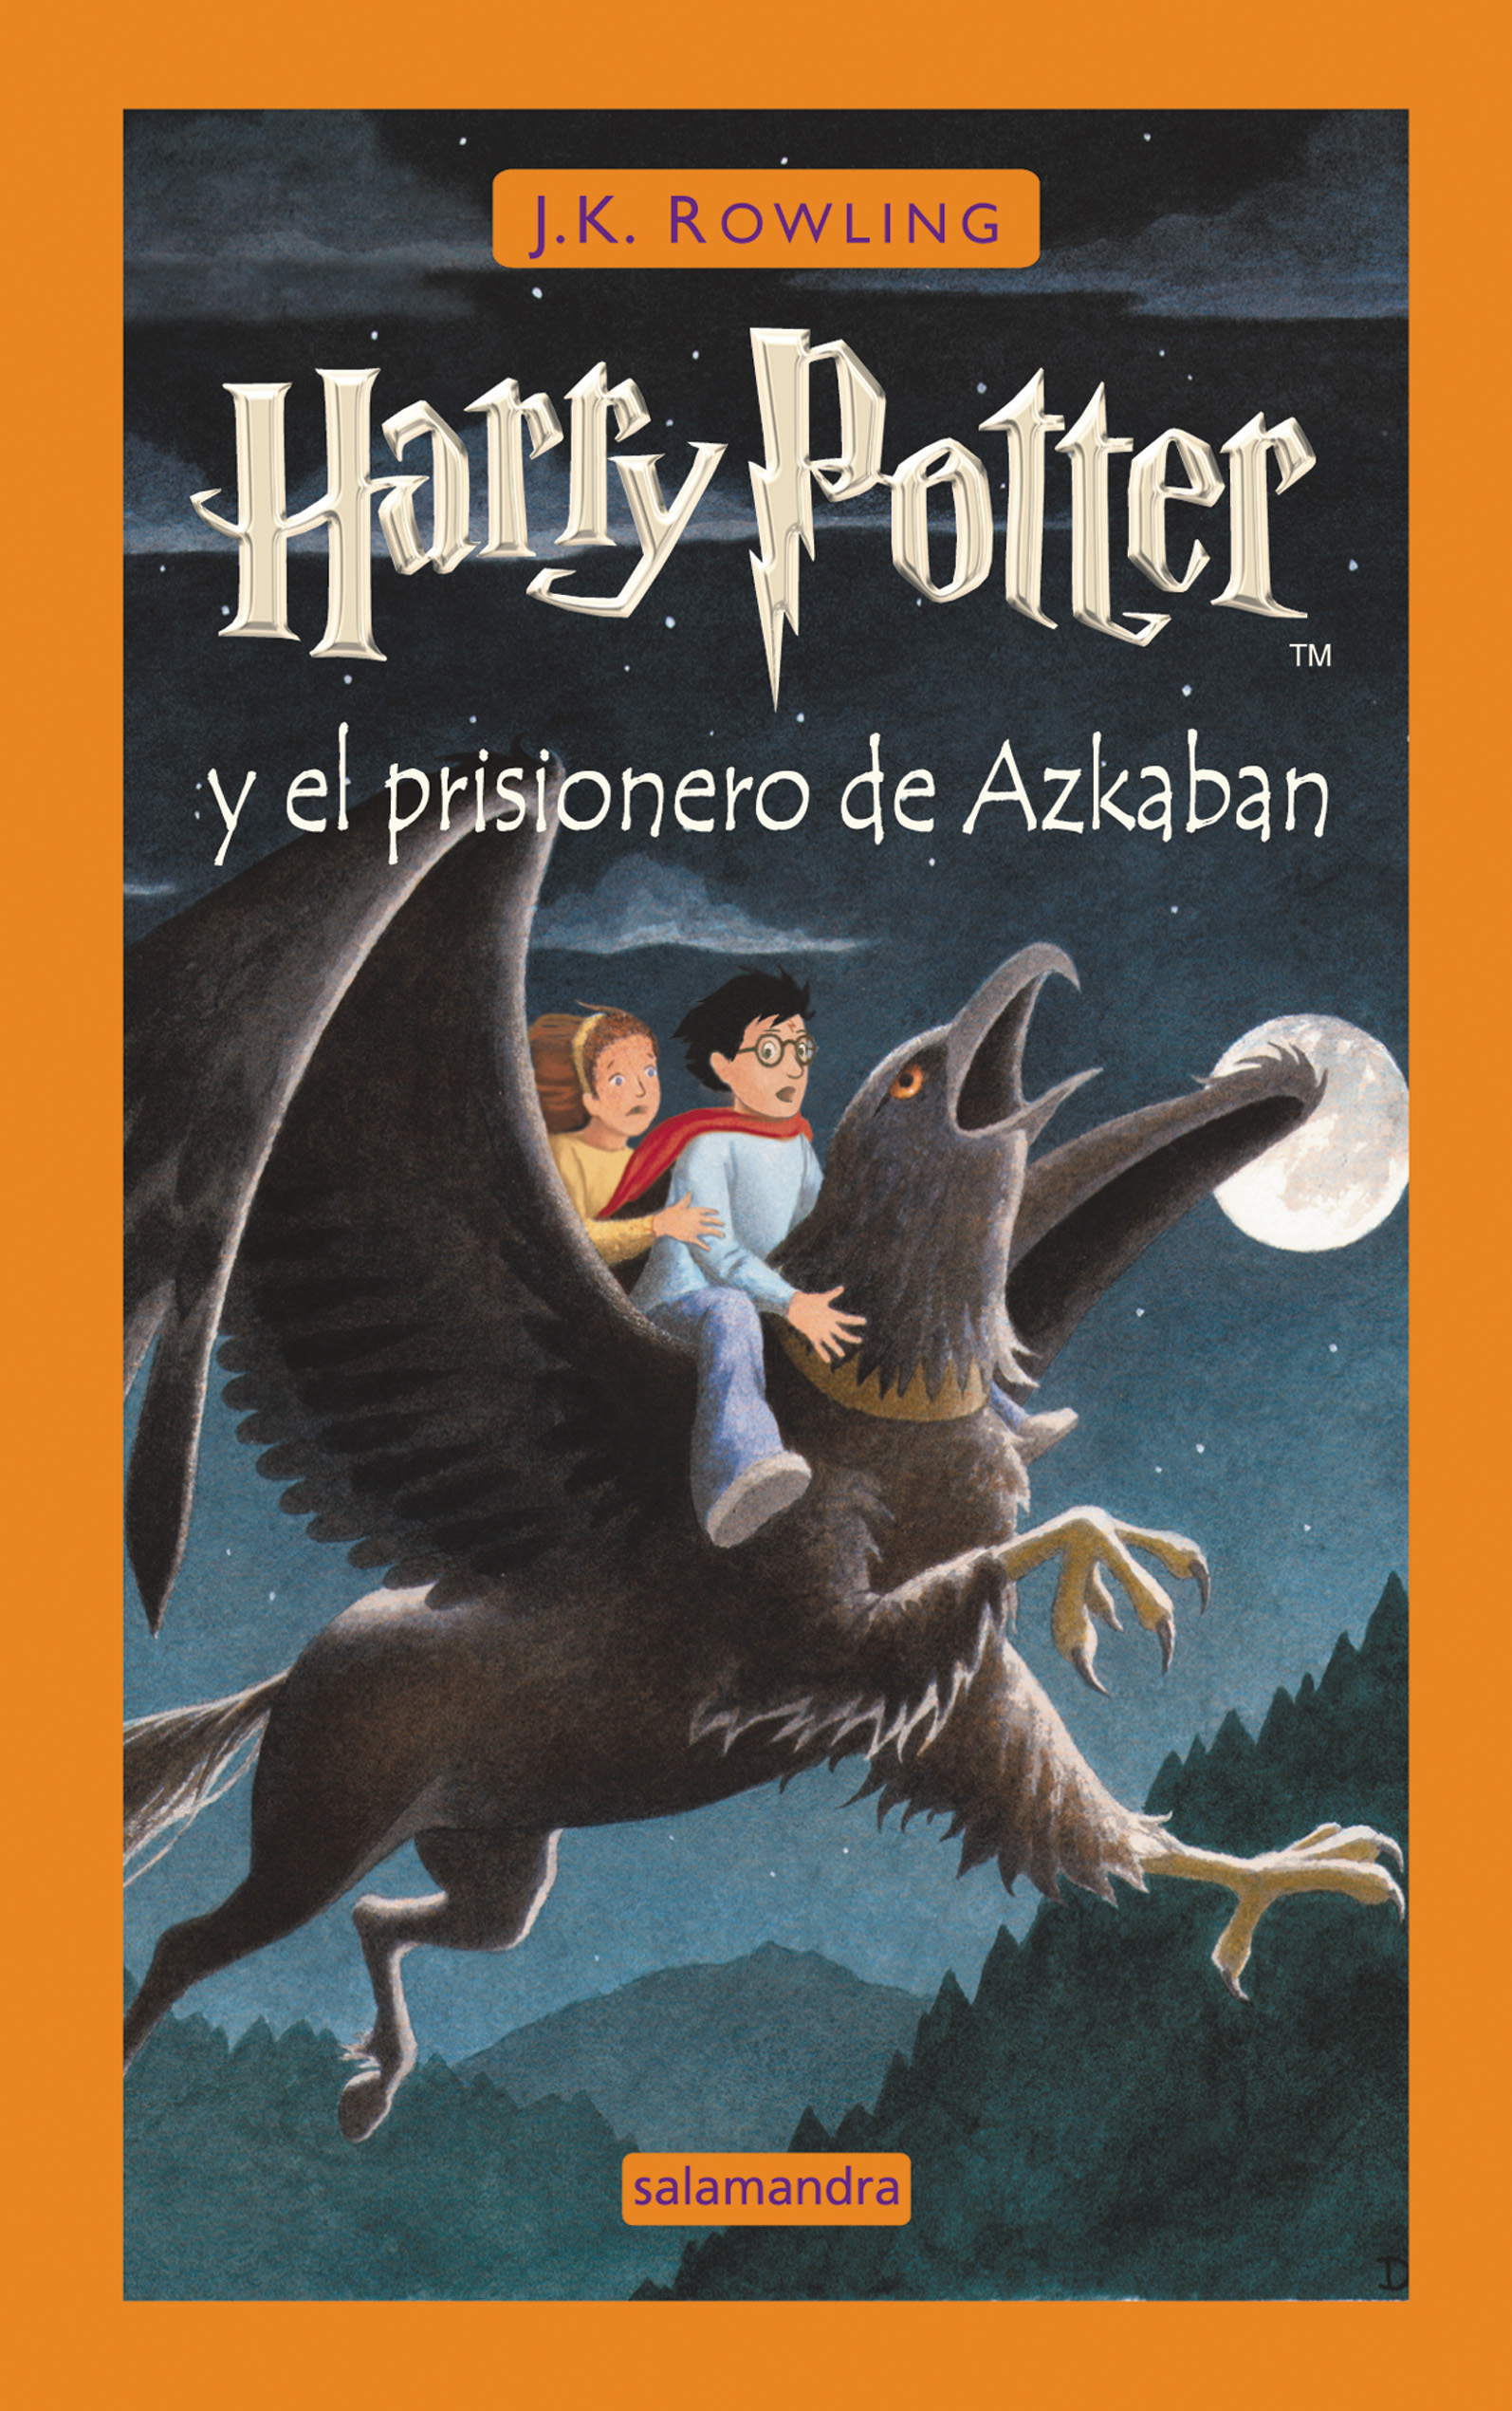 Harry Potter y el prisionero de Azkaban – J. K. Rowling